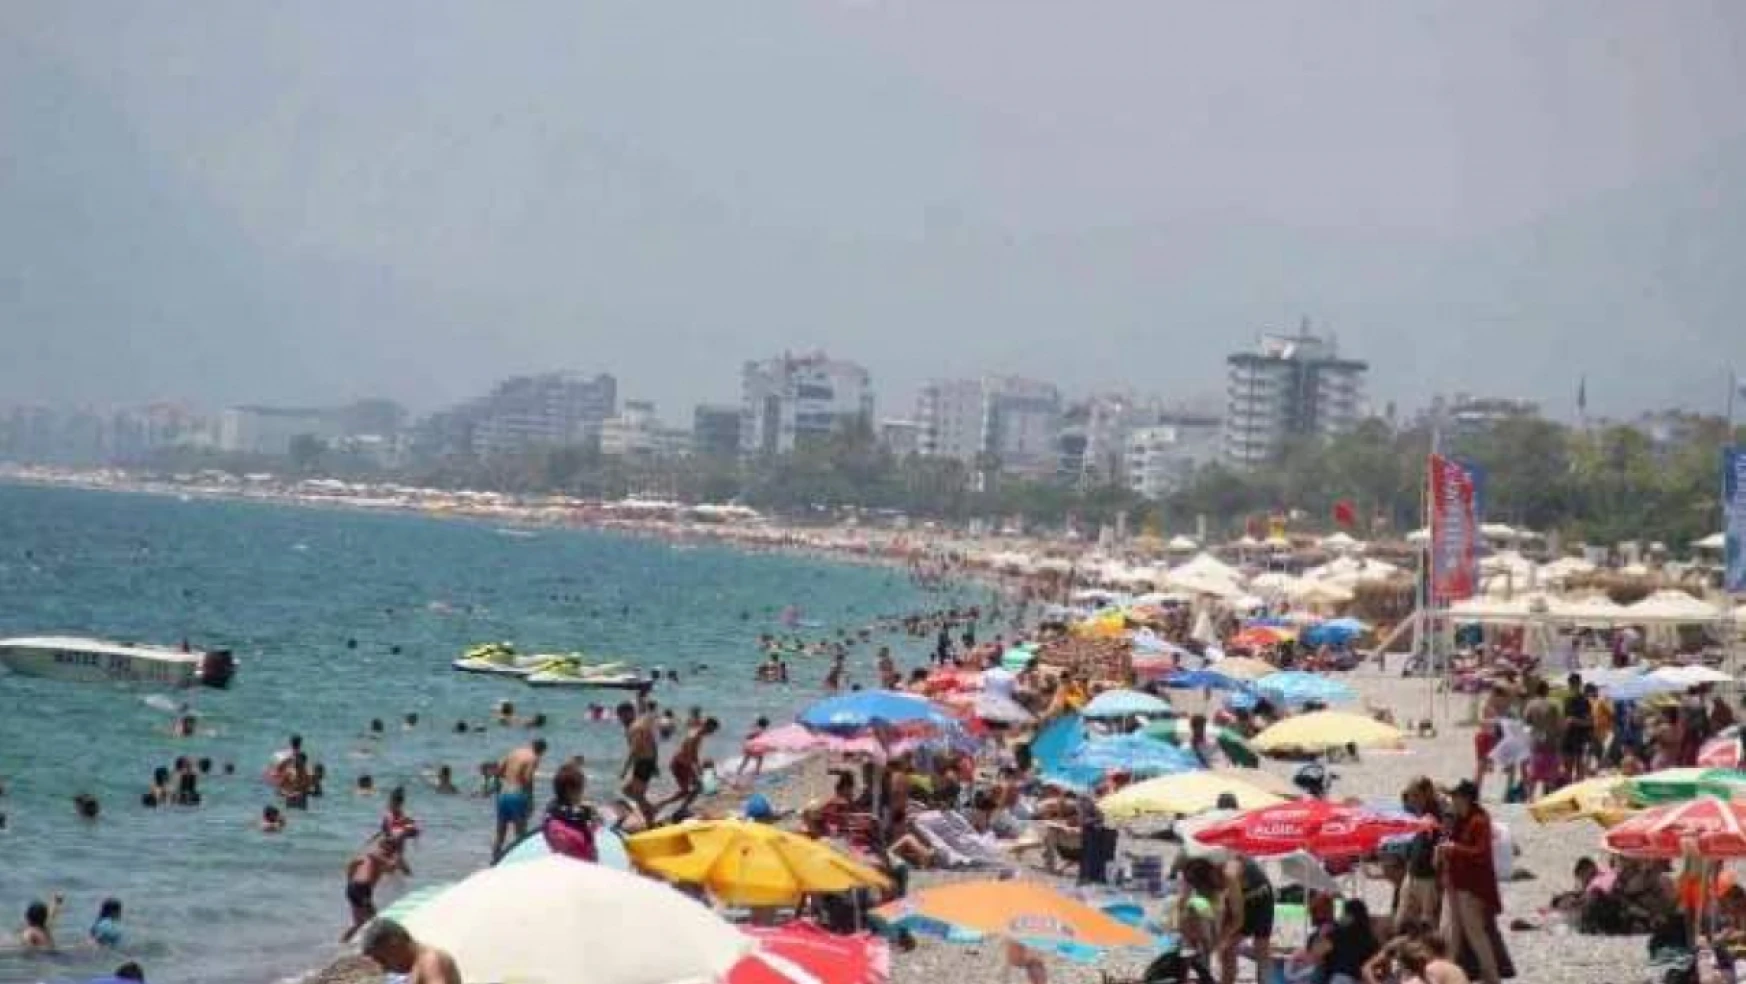 Kamu kurumları artık Antalya'da 5 yıldızlı otelde 'seminer' düzenleyemeyecek